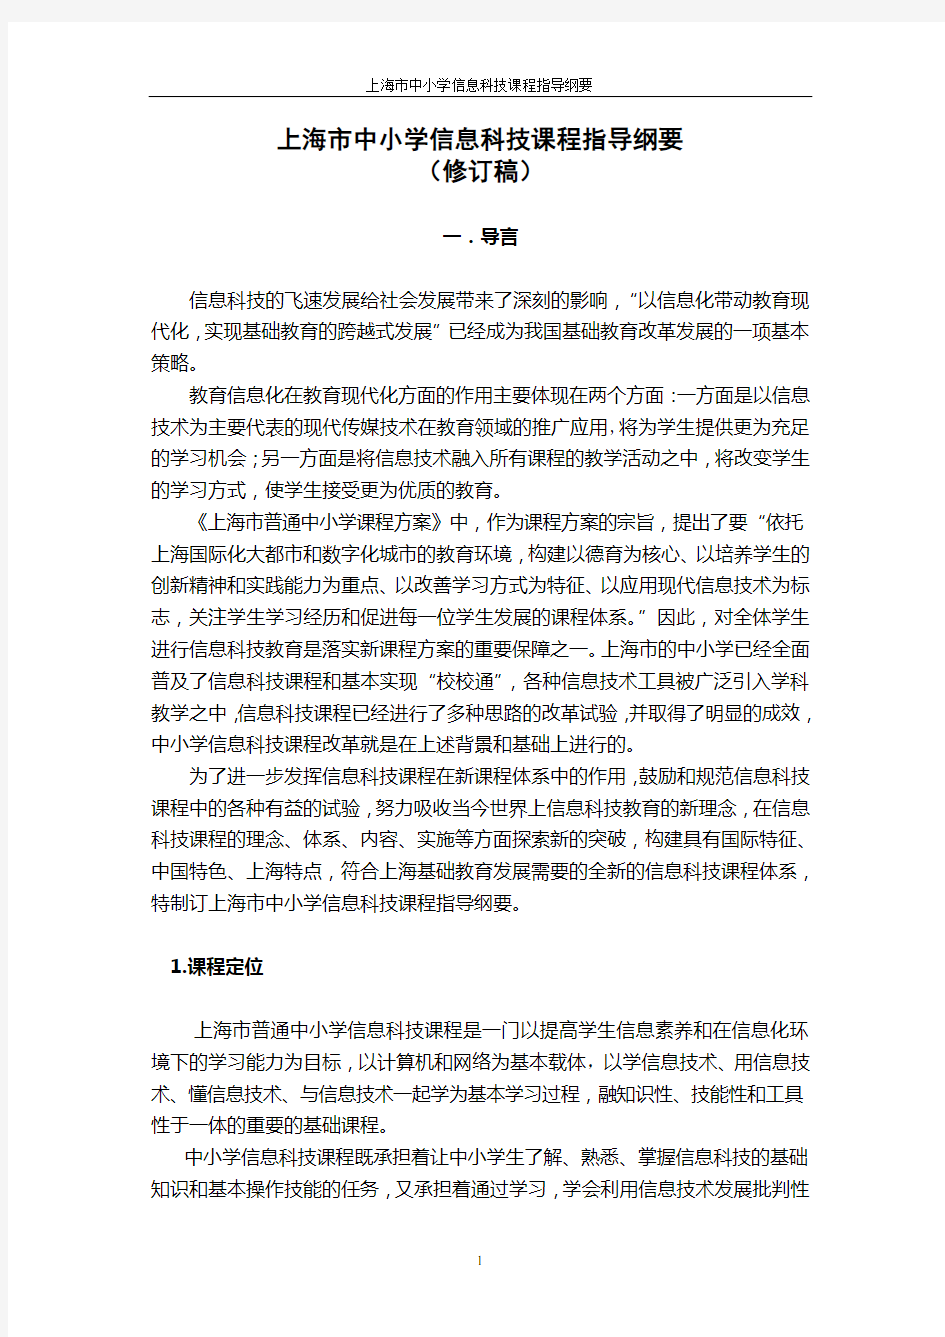 上海市信息科技课程指导纲要